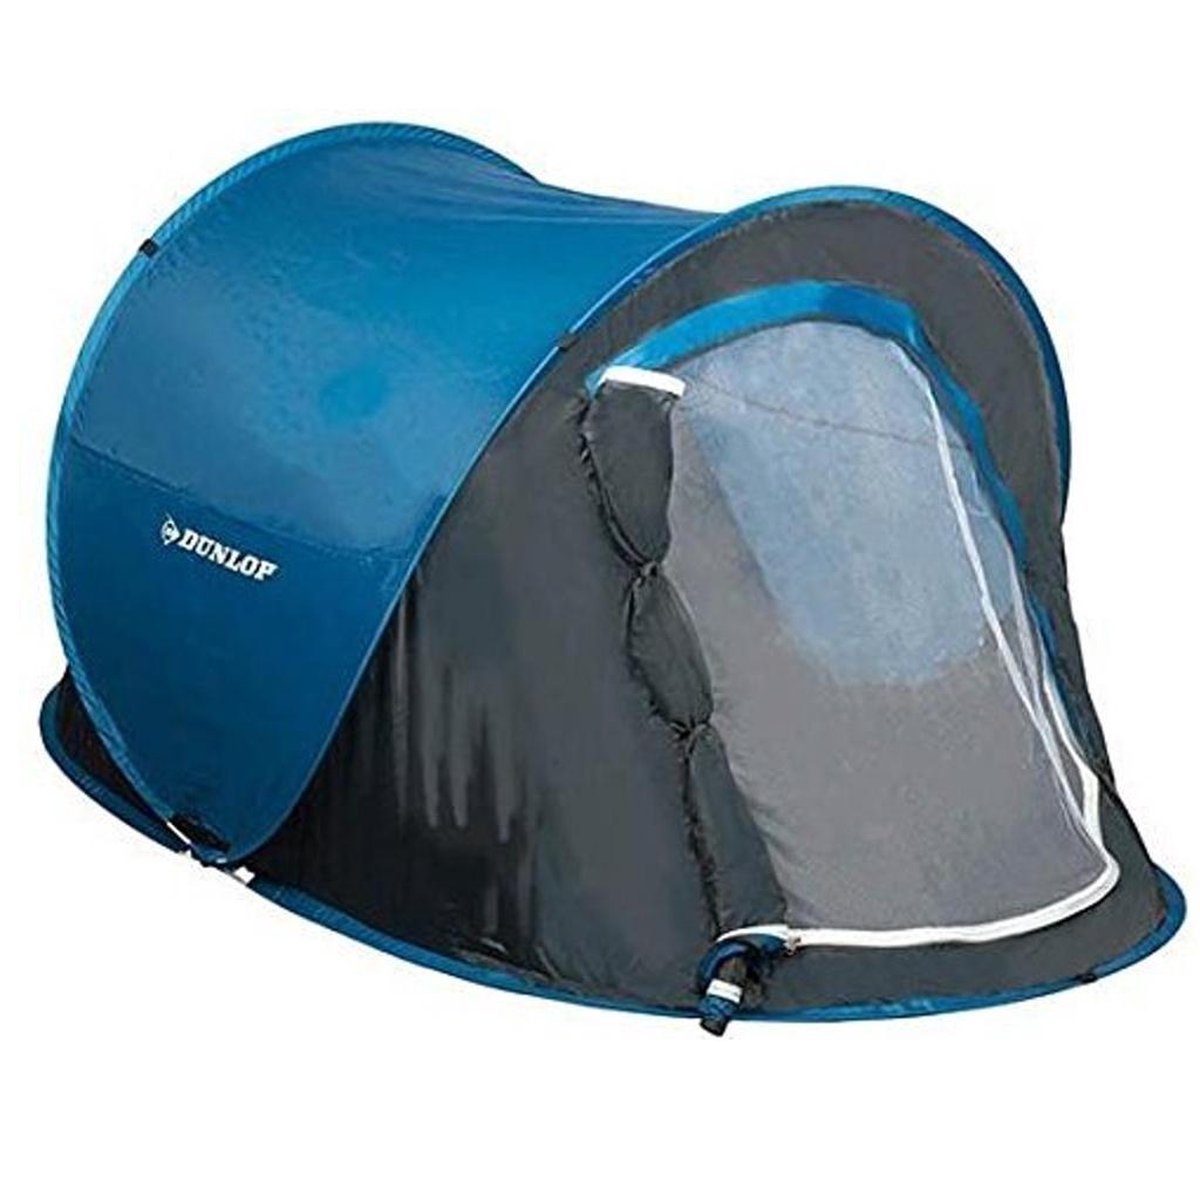 Verslaafde auteur spion Dunlop Pop Up Tent - Blauw/ Grijs/ Wit - 2 Persoons | bol.com